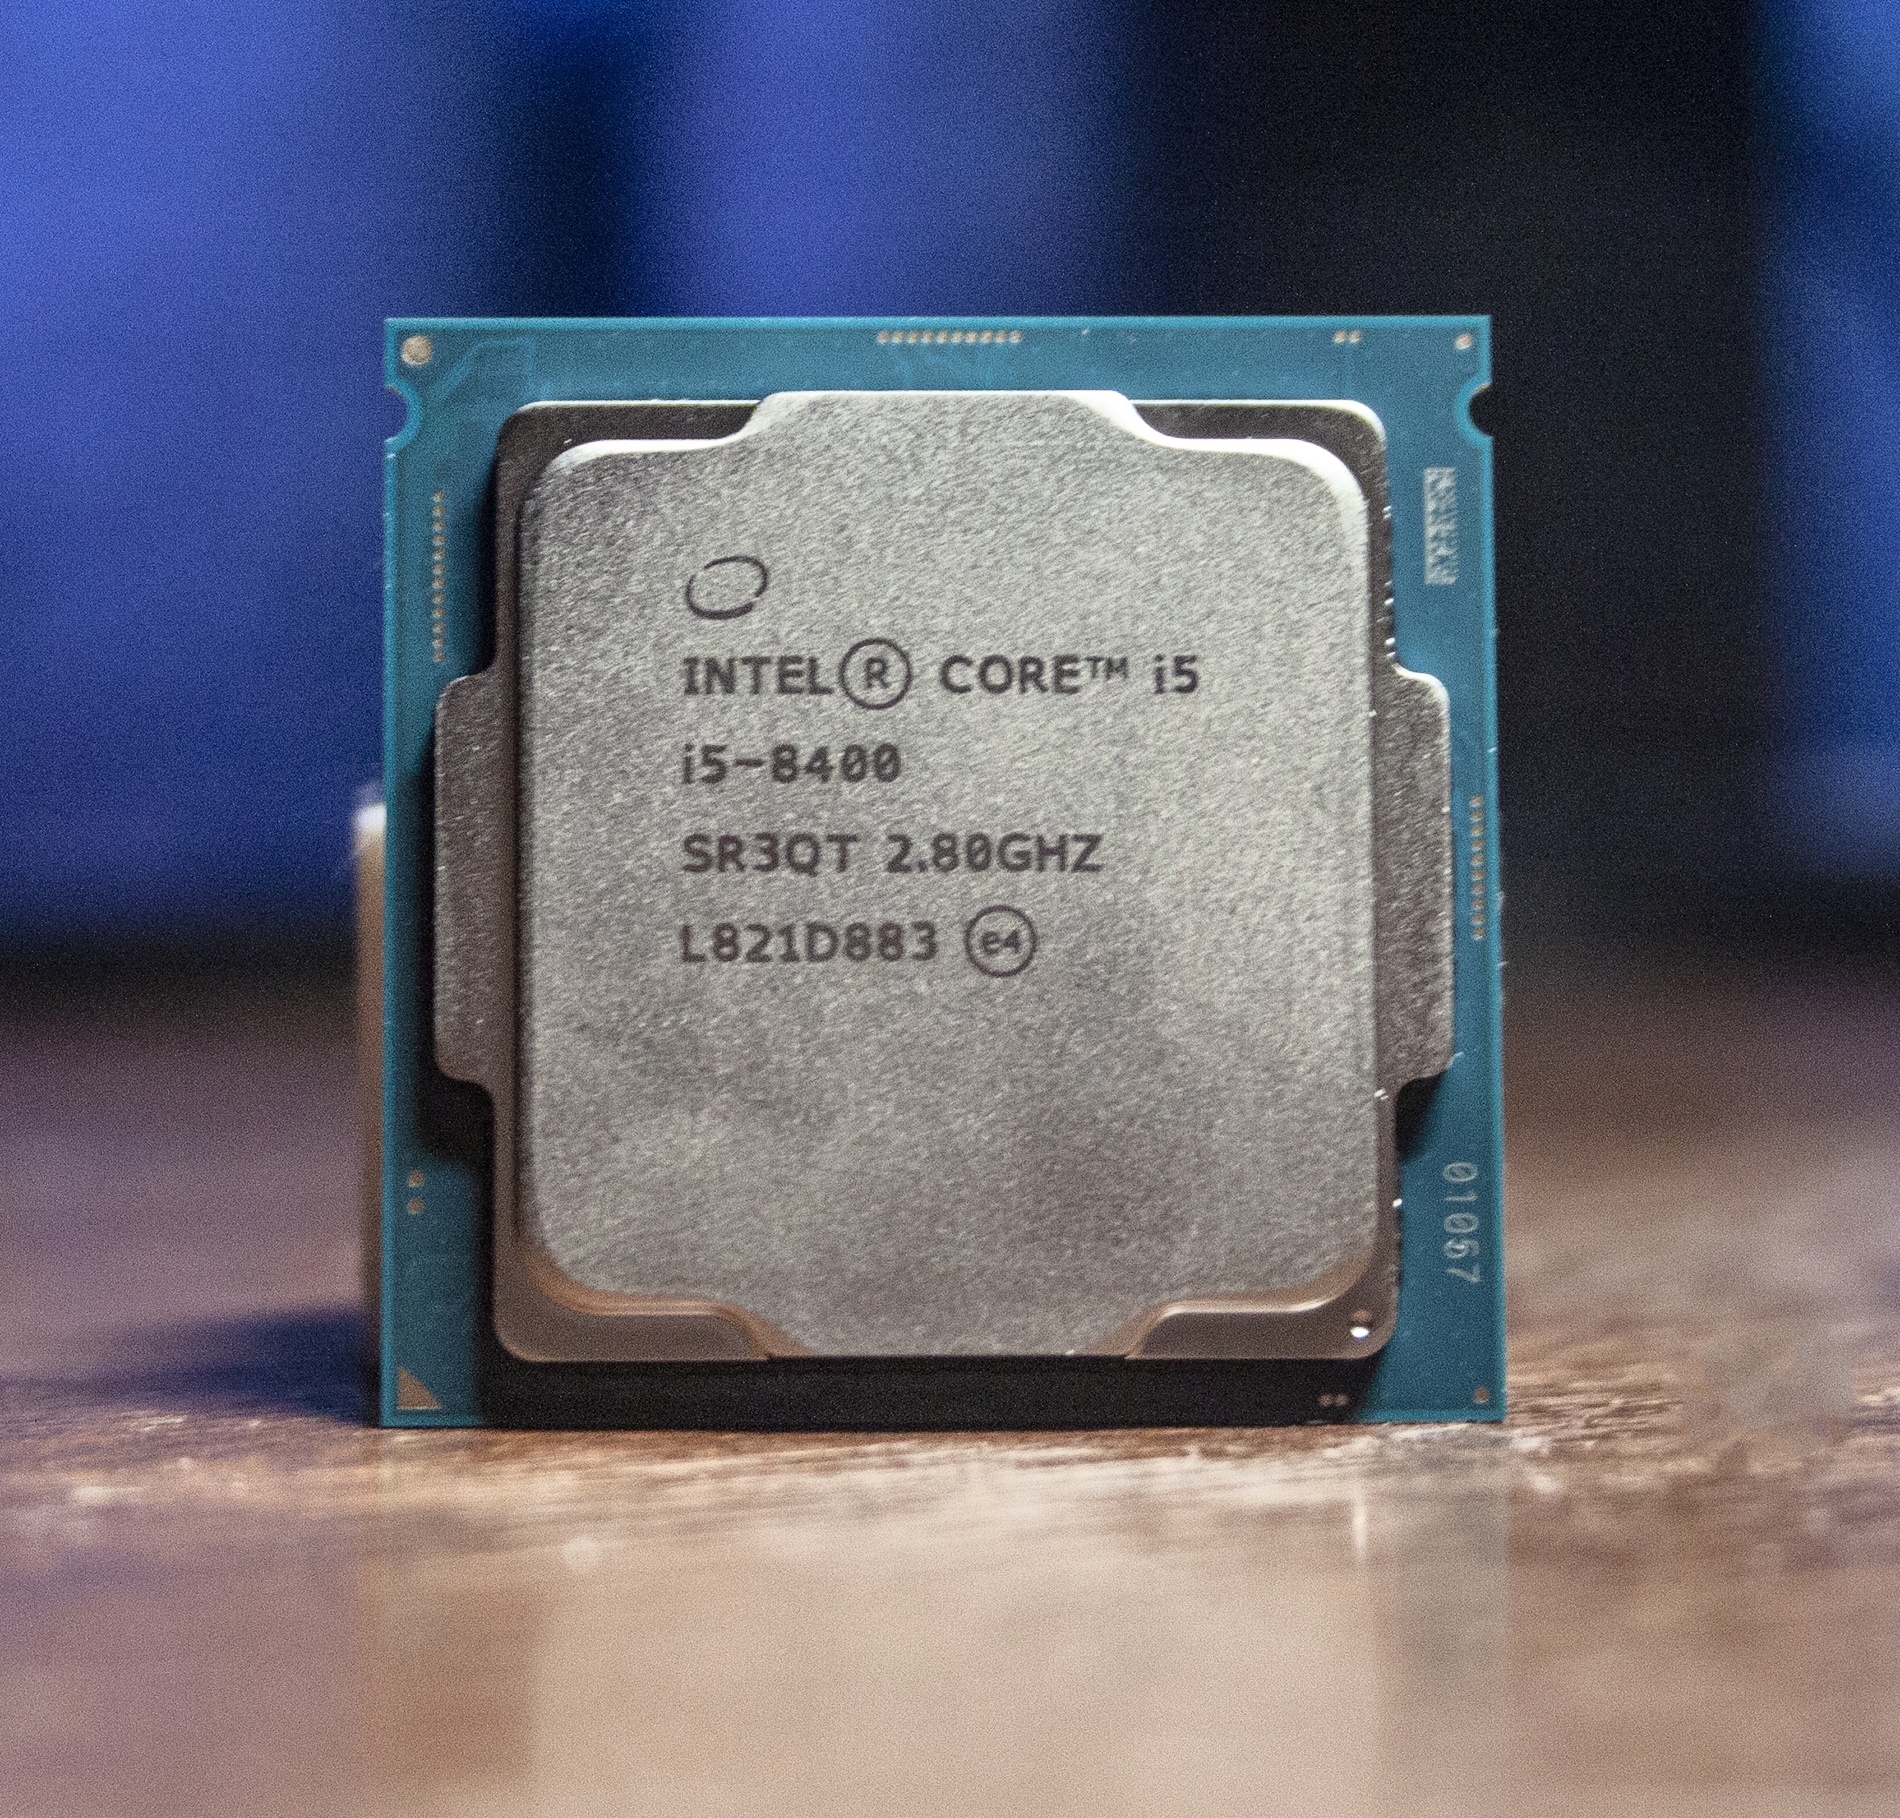 Интел коре 8400. Core i5 8400. Intel Core i5 8400 OEM. Процессор Intel Core i5-8400 Box. Intel Core i5-8400 lga1151 v2, 6 x 2800 МГЦ.